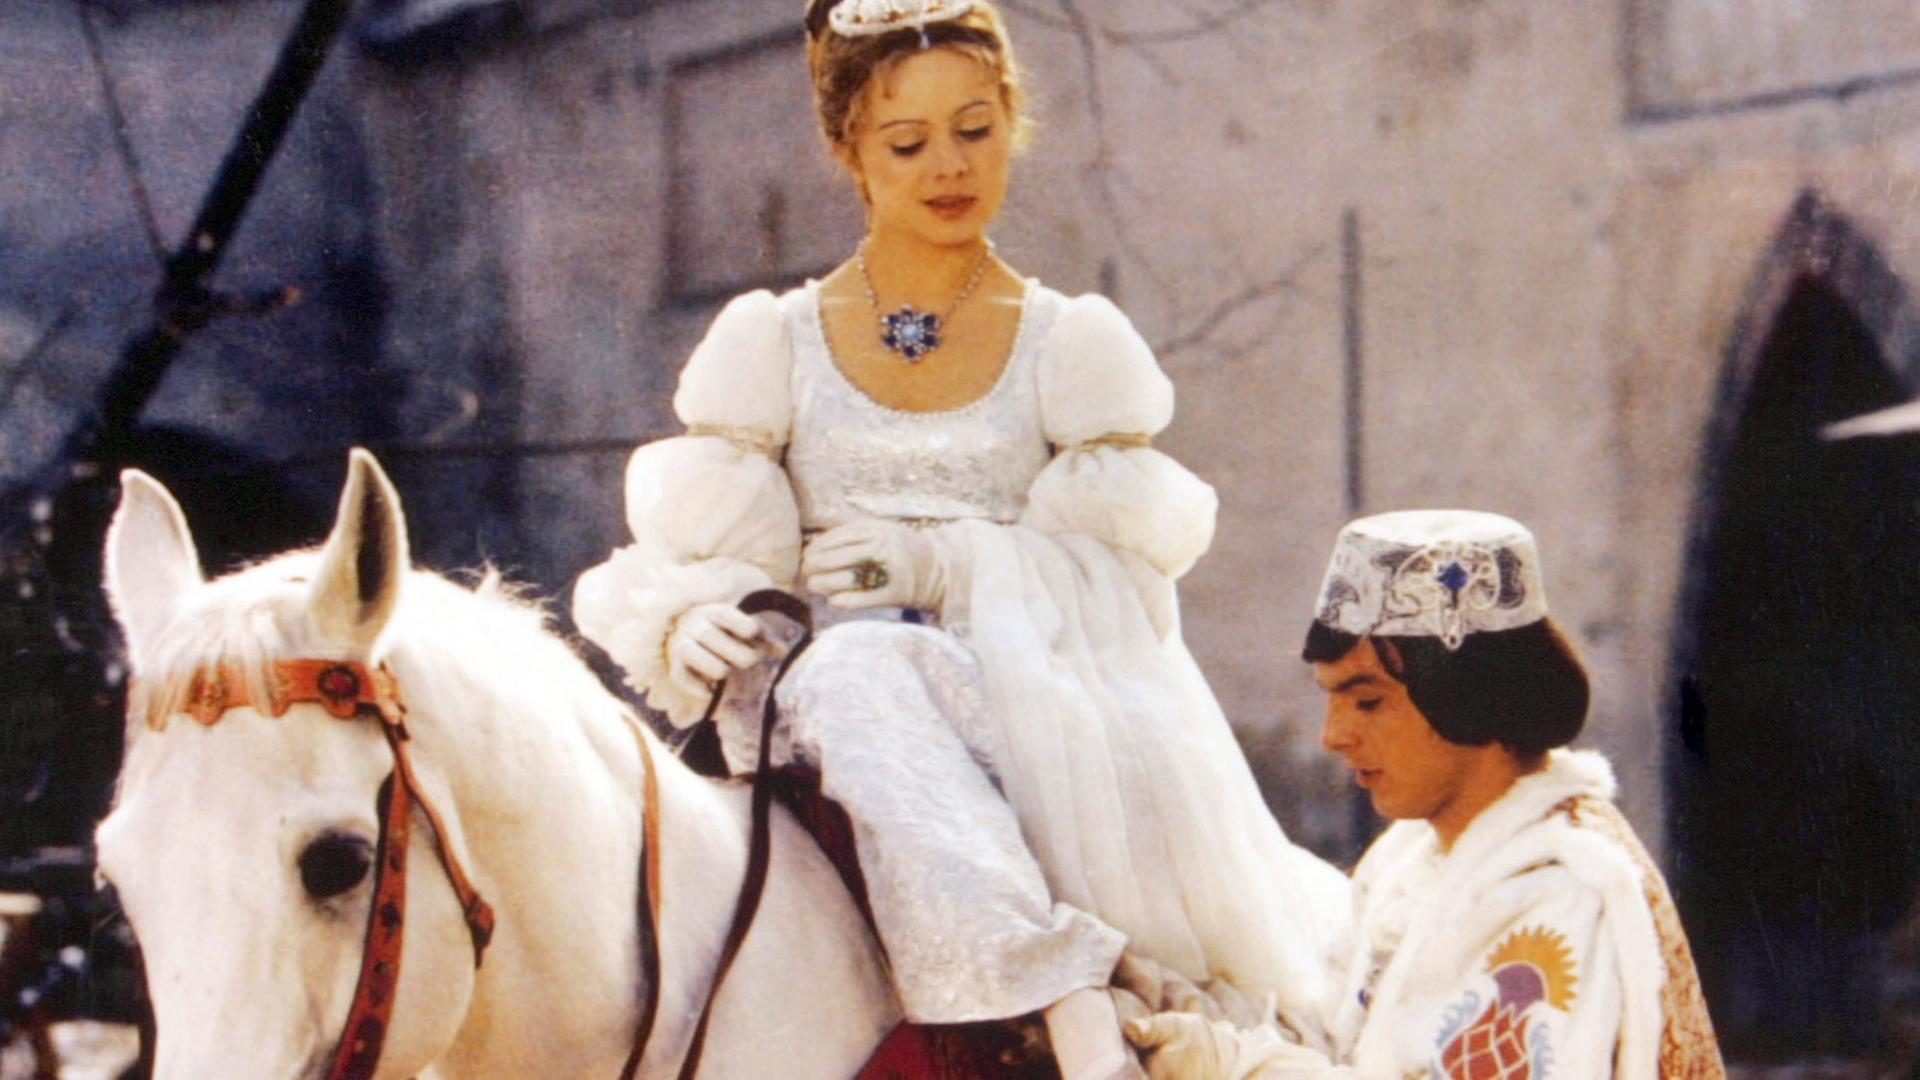 Szene aus dem Film "Drei Haselnüsse für Aschenbrödel": Der Prinz passt Aschenbrödel den verlorenen Schuh an. Sie sitzt dabei auf einem weißen Pferd und blickt zu ihm hinunter.